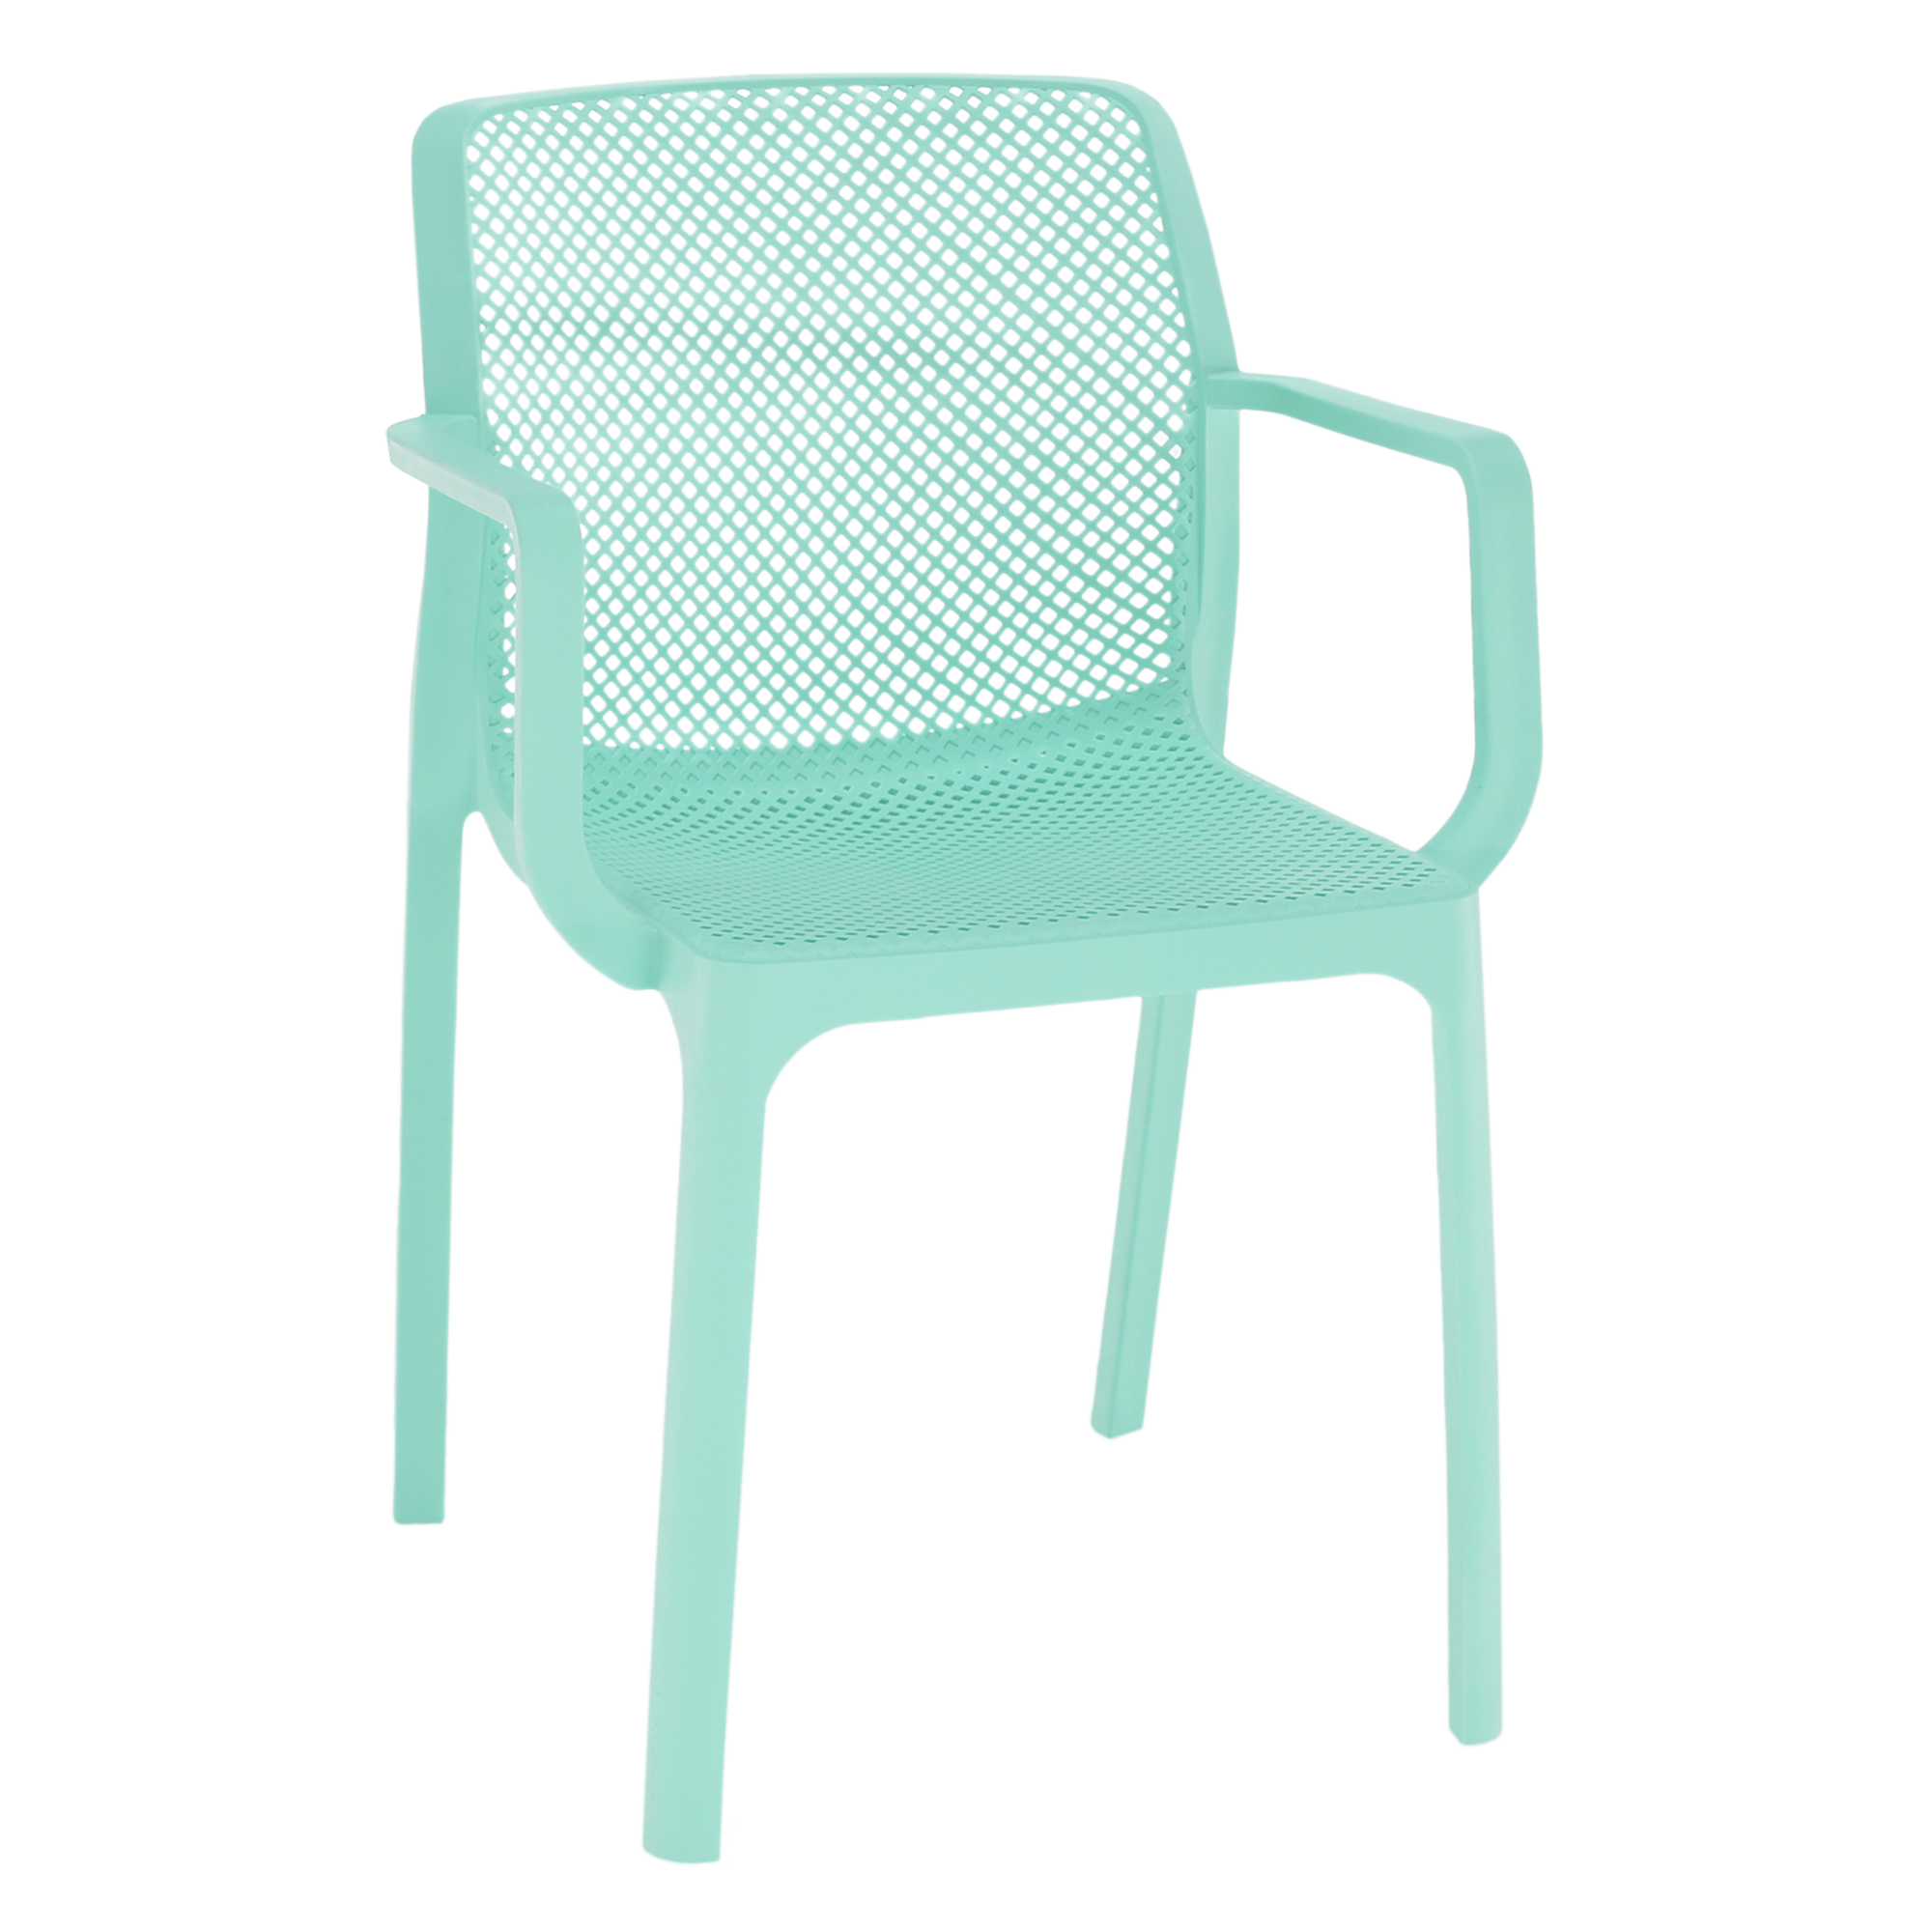 Rakásolható szék, mentol/műanyag, FRENIA